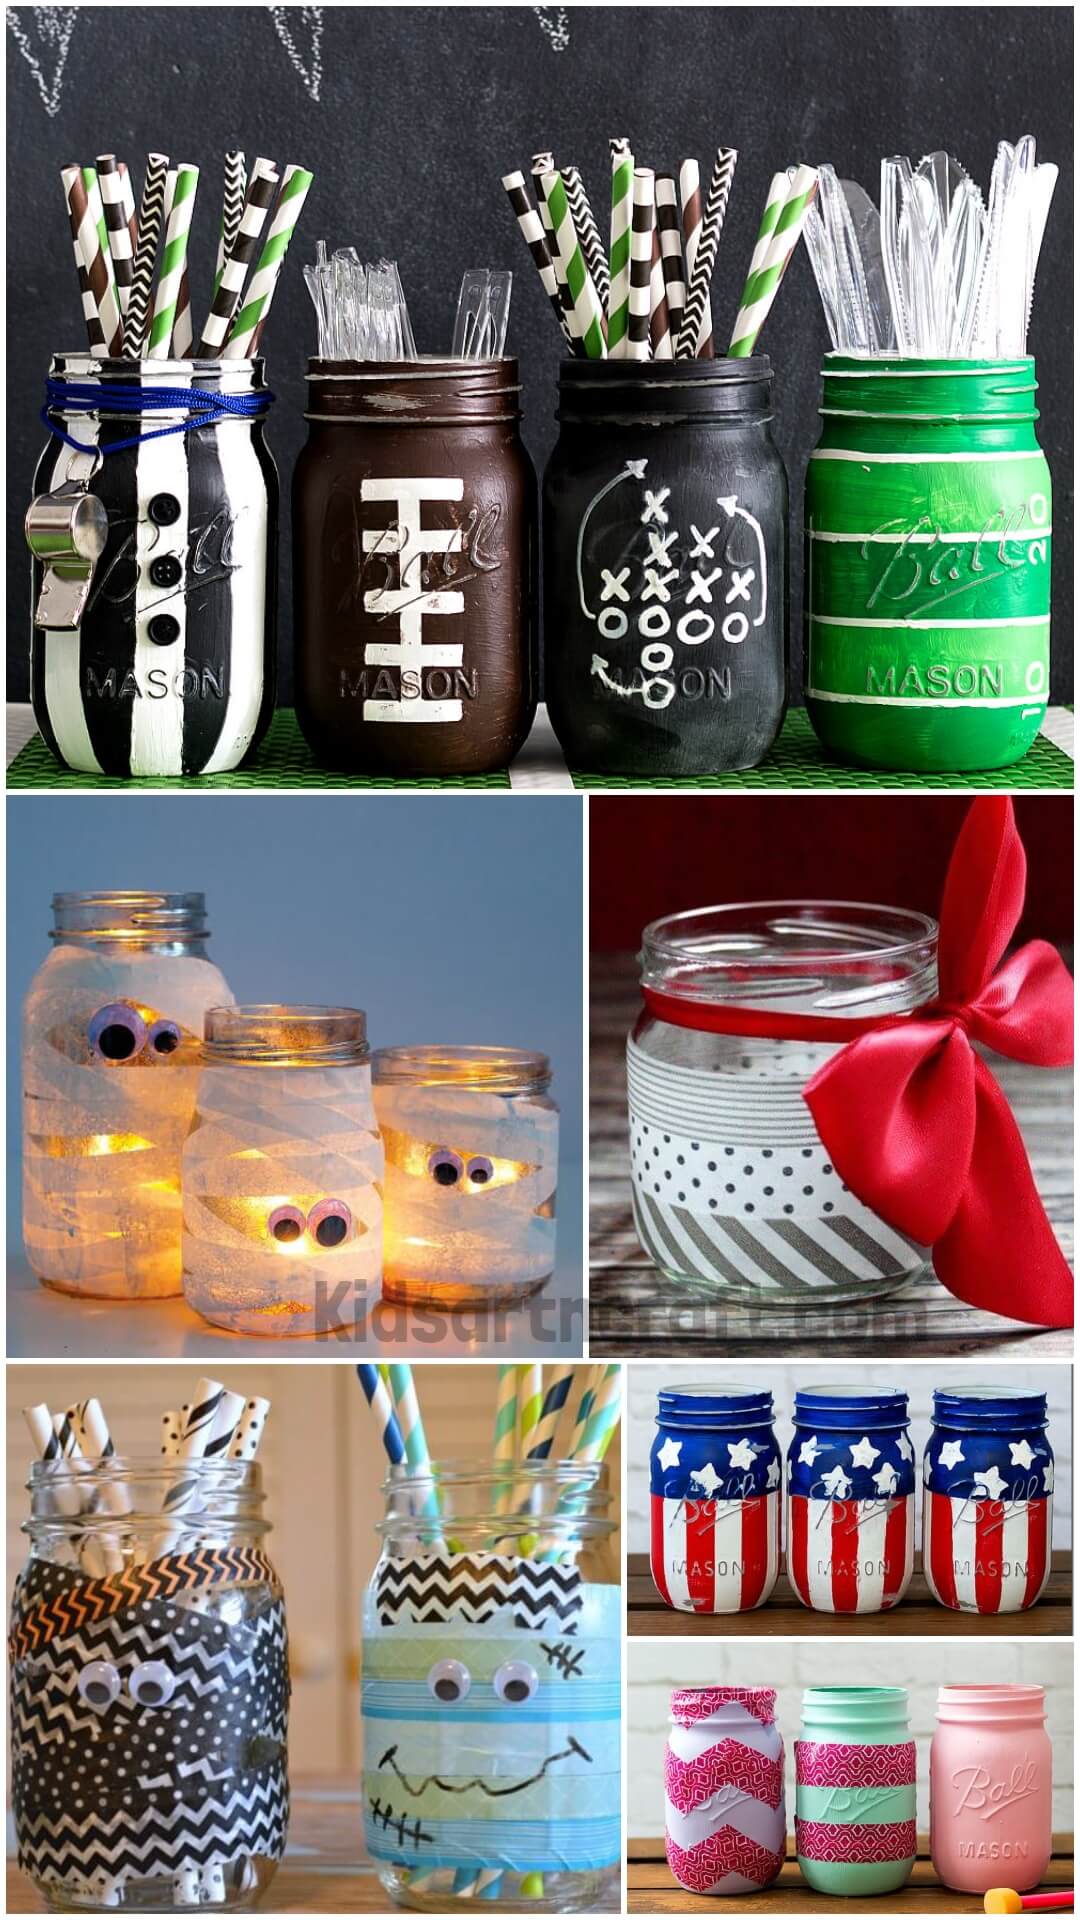  Decorative Mason Jar Washi Tape Crafts